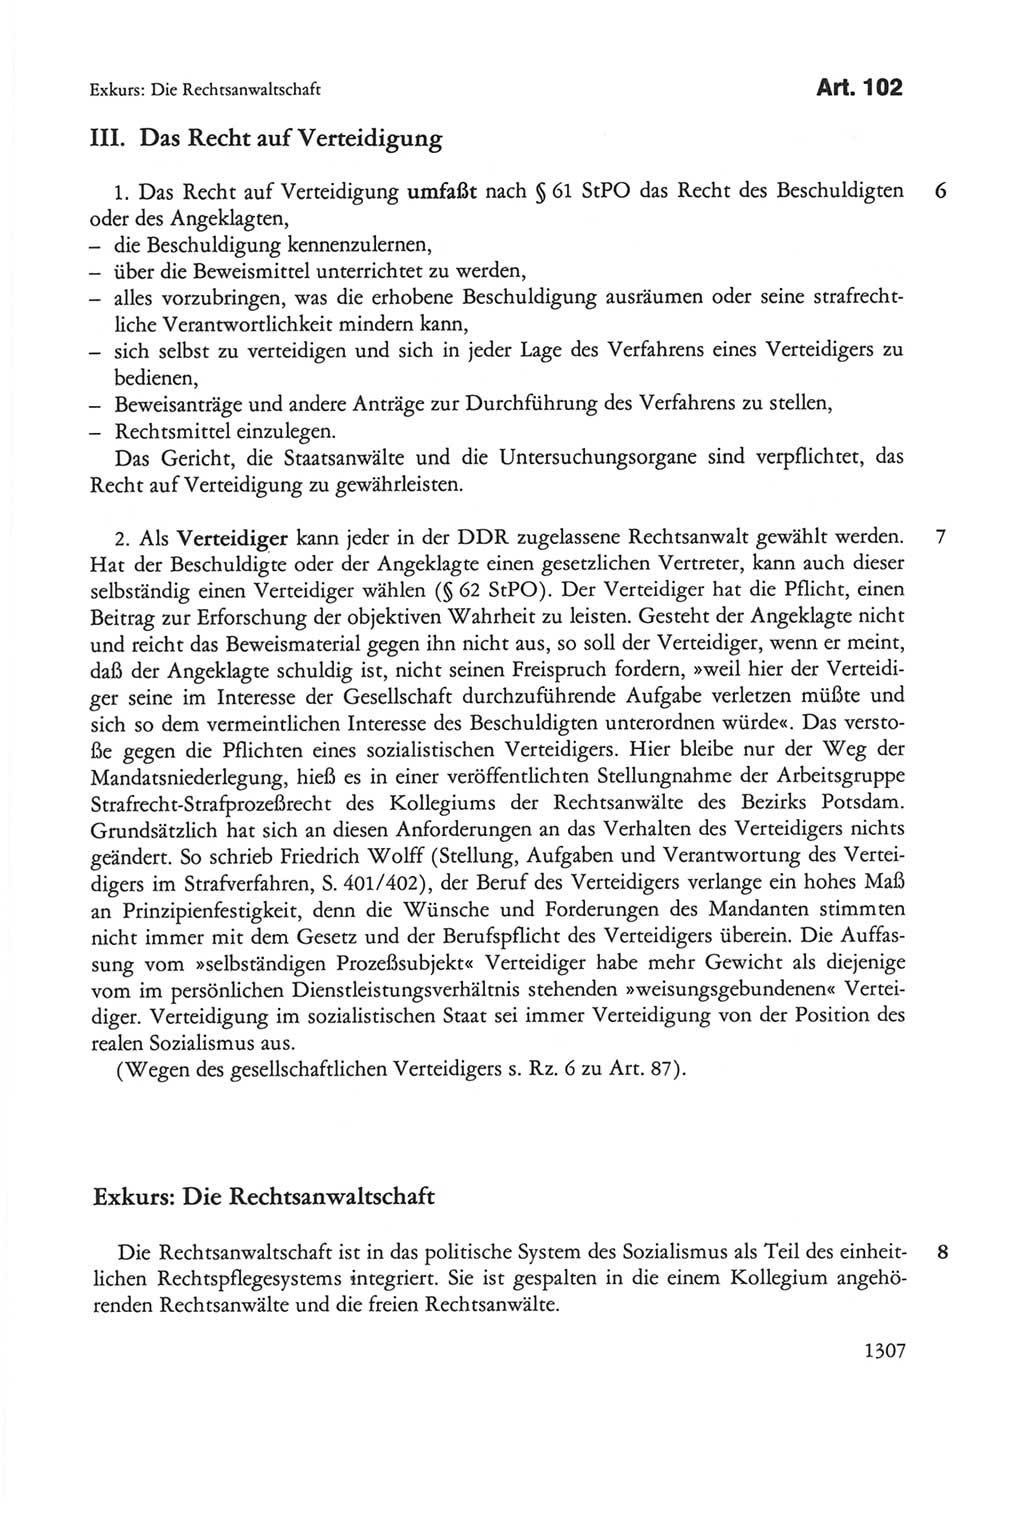 Die sozialistische Verfassung der Deutschen Demokratischen Republik (DDR), Kommentar mit einem Nachtrag 1997, Seite 1307 (Soz. Verf. DDR Komm. Nachtr. 1997, S. 1307)